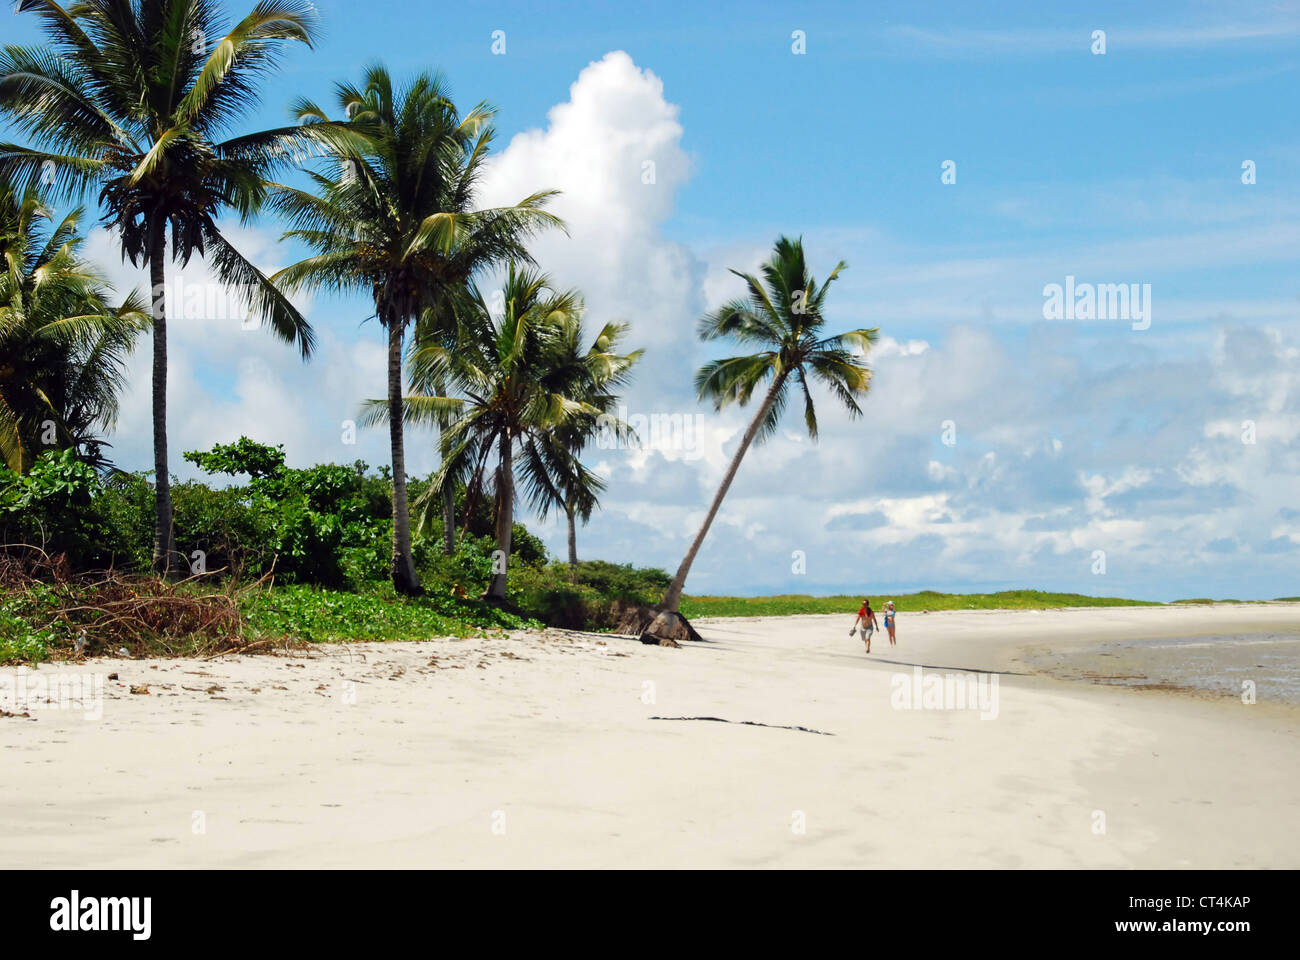 Il Brasile, Pernambuco, Ilha de Itamaraca, Corrao de Aviao, spiaggia bianca con palme Foto Stock